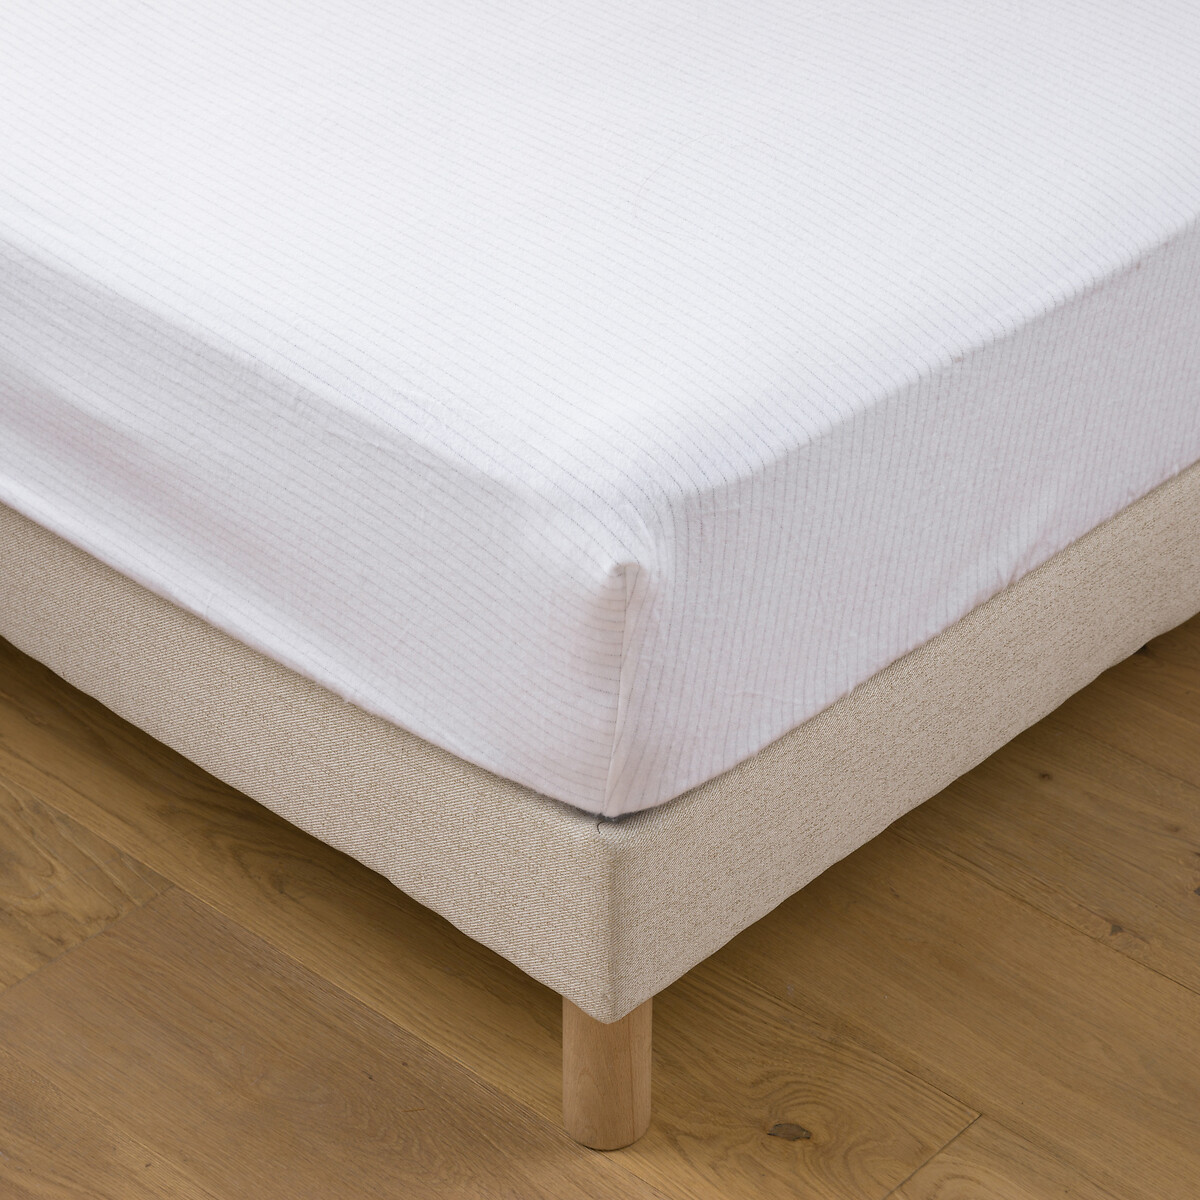 Защитная простыня для матраса из мольтона 120 x 190 см белый простыня для раскладного дивана из махровой ткани и полиуретана 140 x 190 см белый